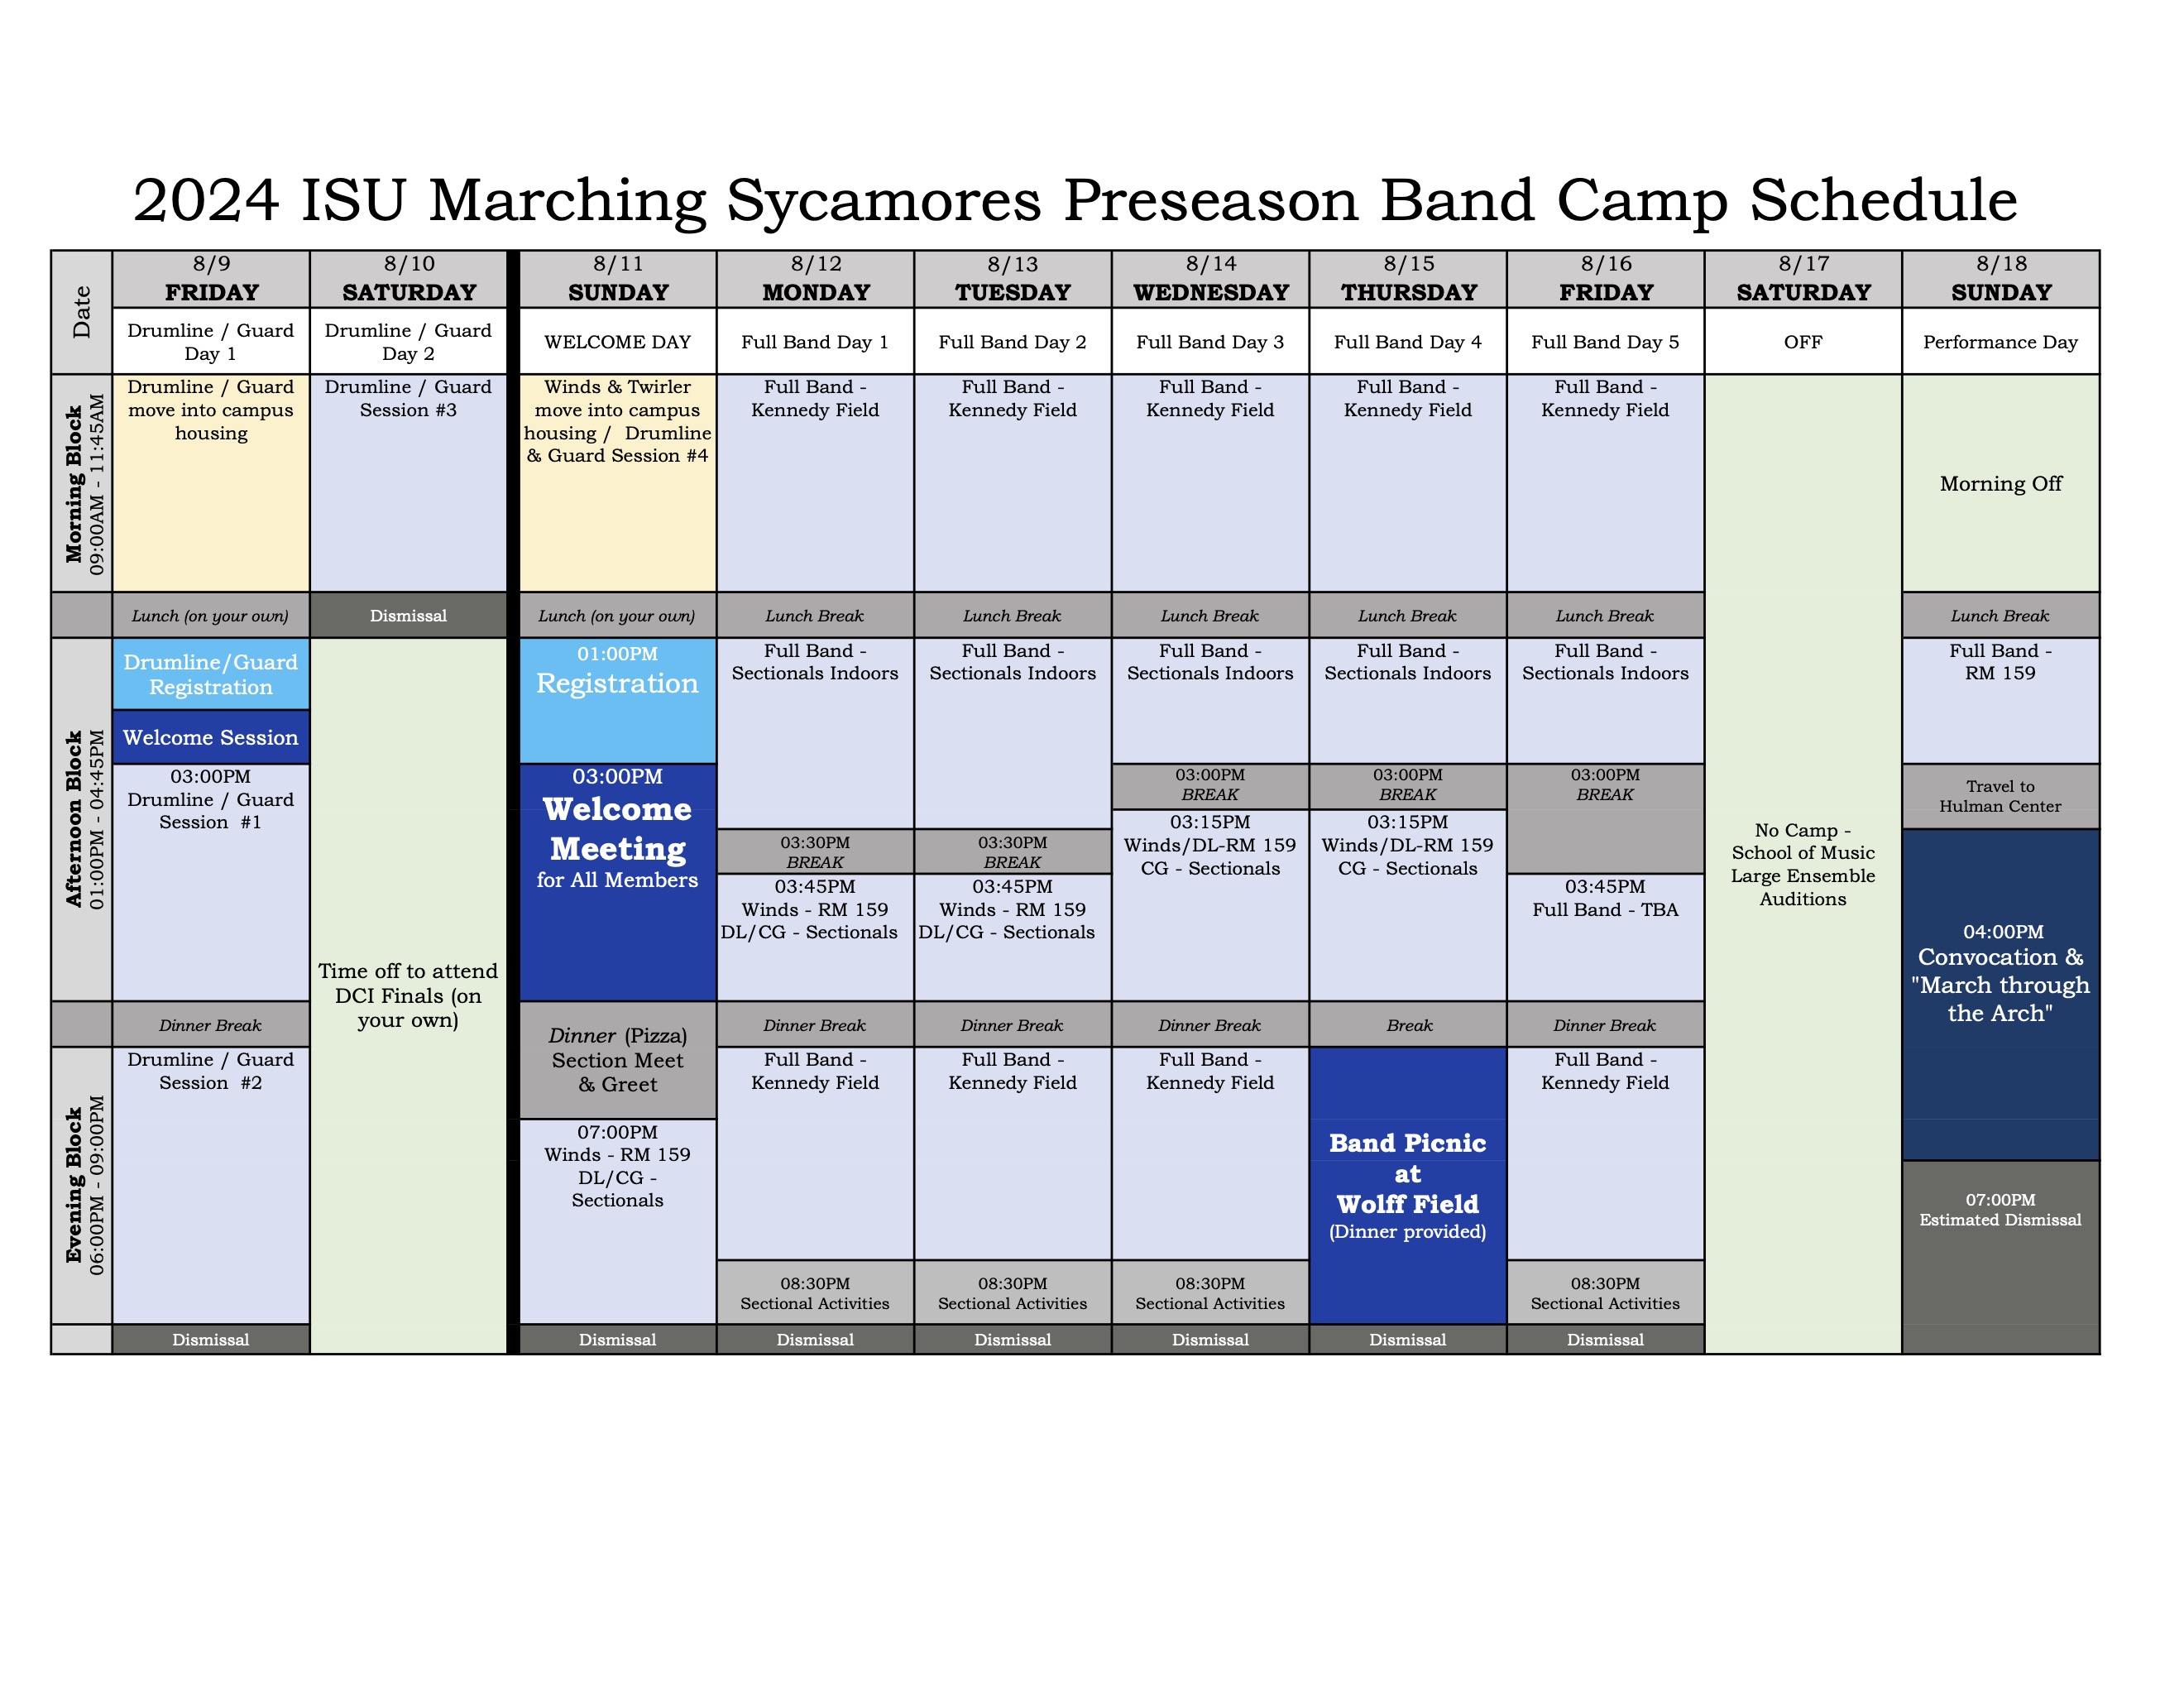 Camp Schedule 2